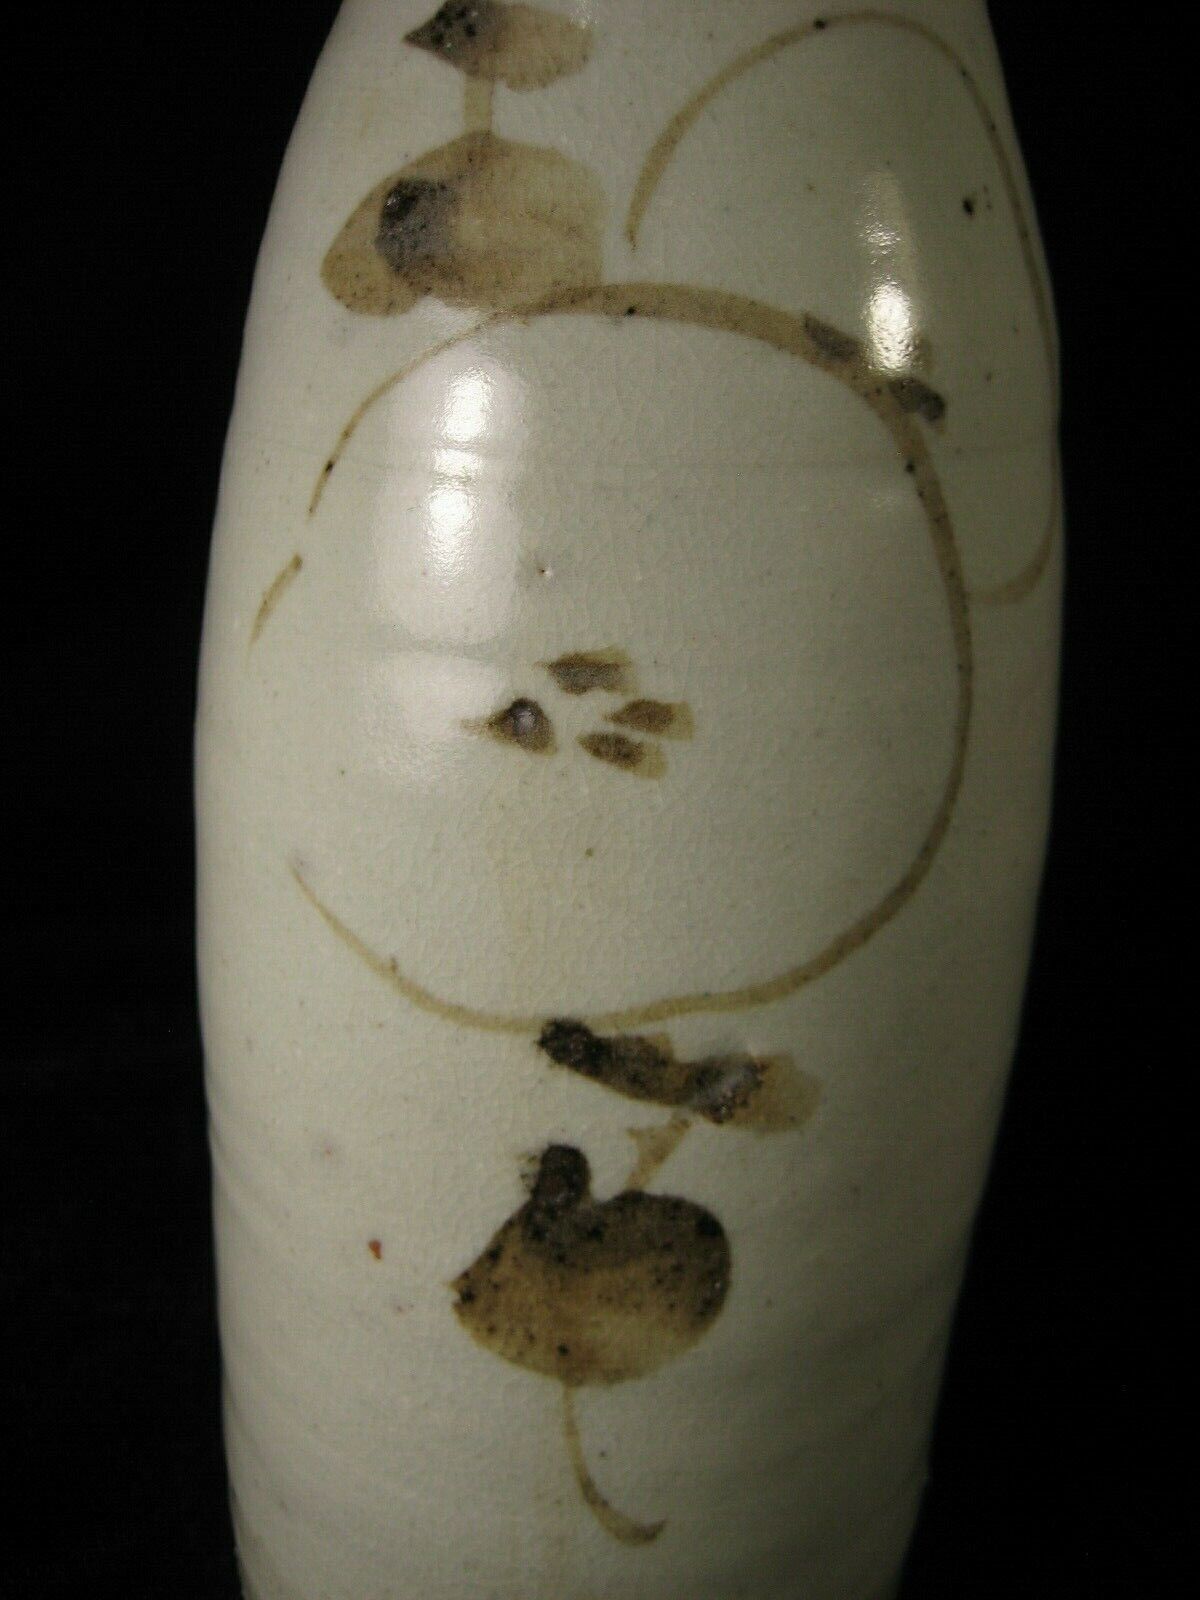 Antique Japanese Late Meiji Era (C. 1890) Ceramic Tokkuri Sake Bottle / Vase